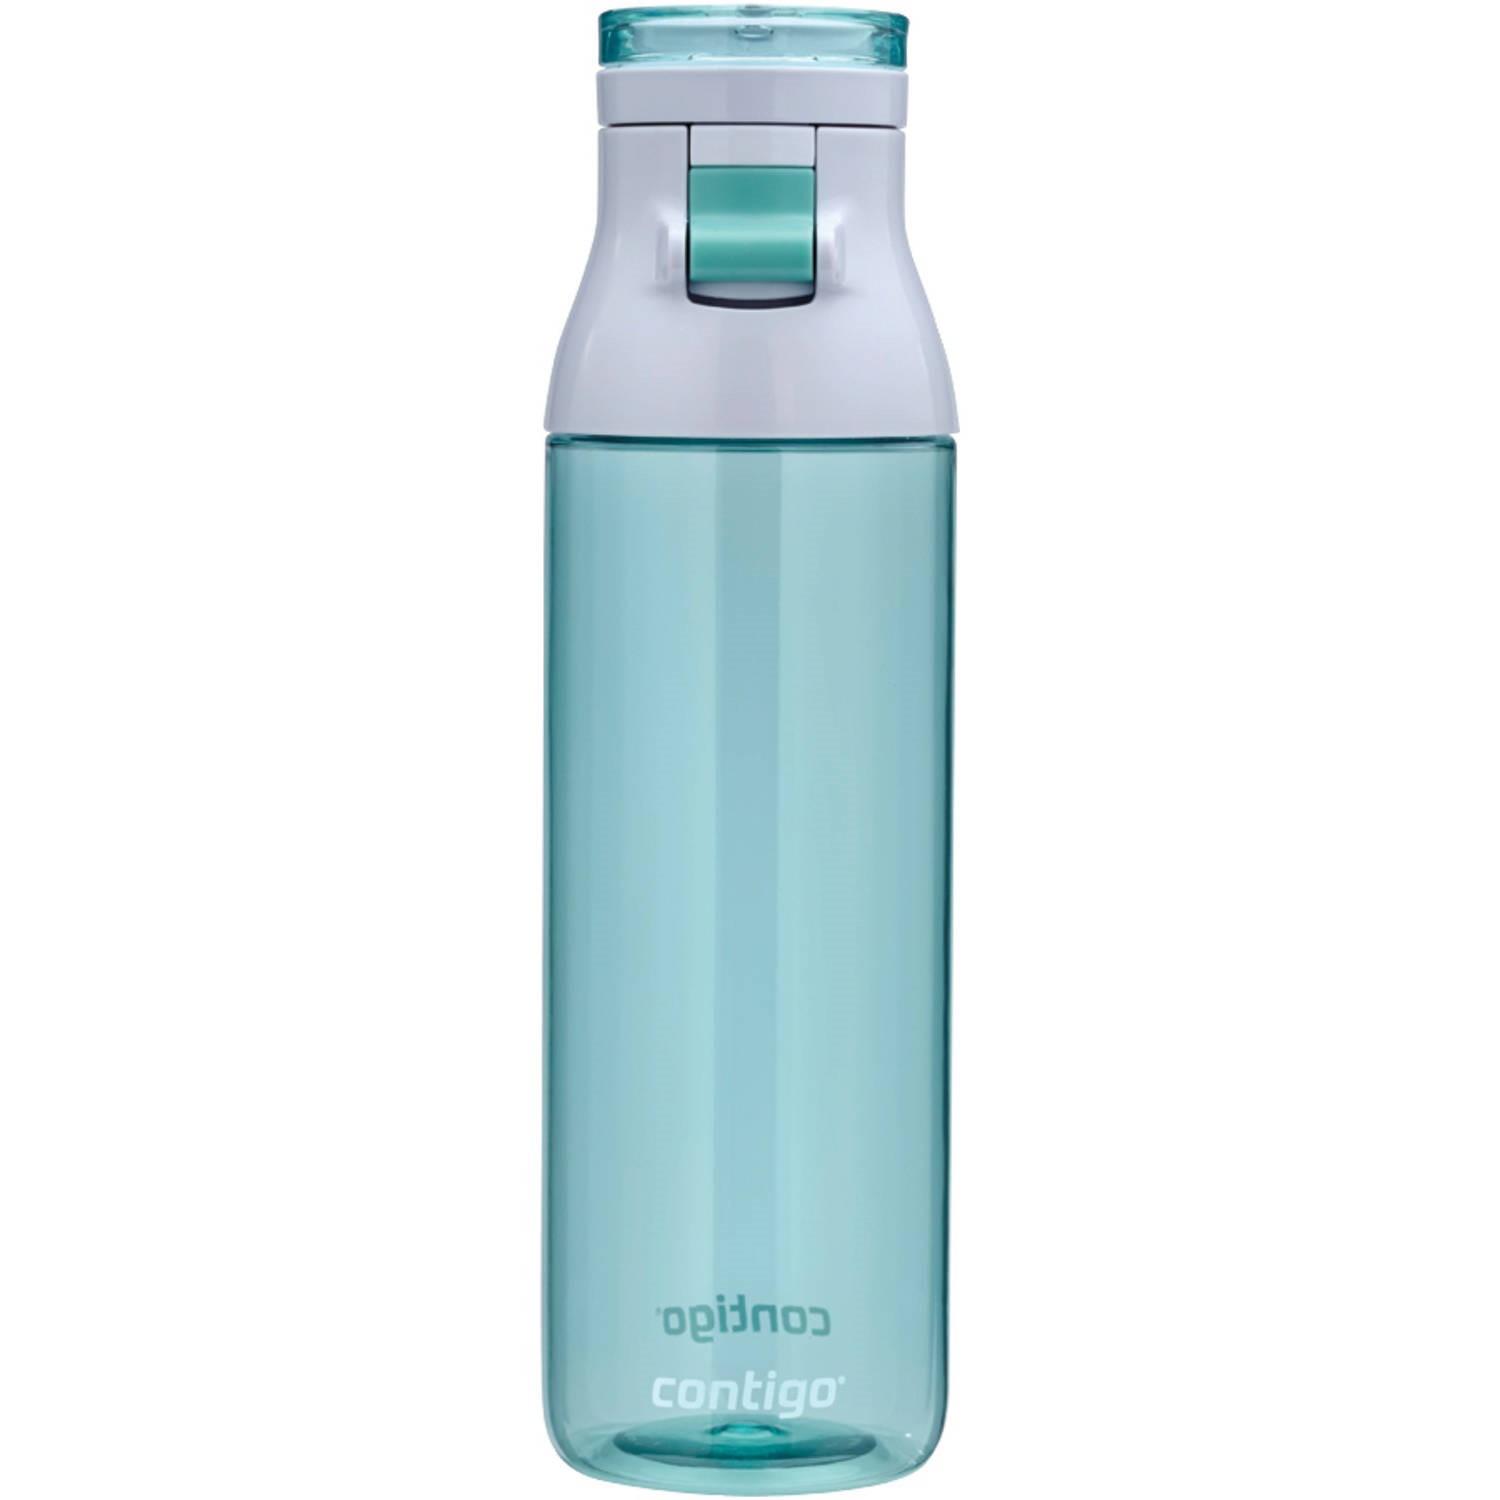 Contigo Jackson Reusable Water Bottle, 24 oz., Grayed Jade - image 1 of 3